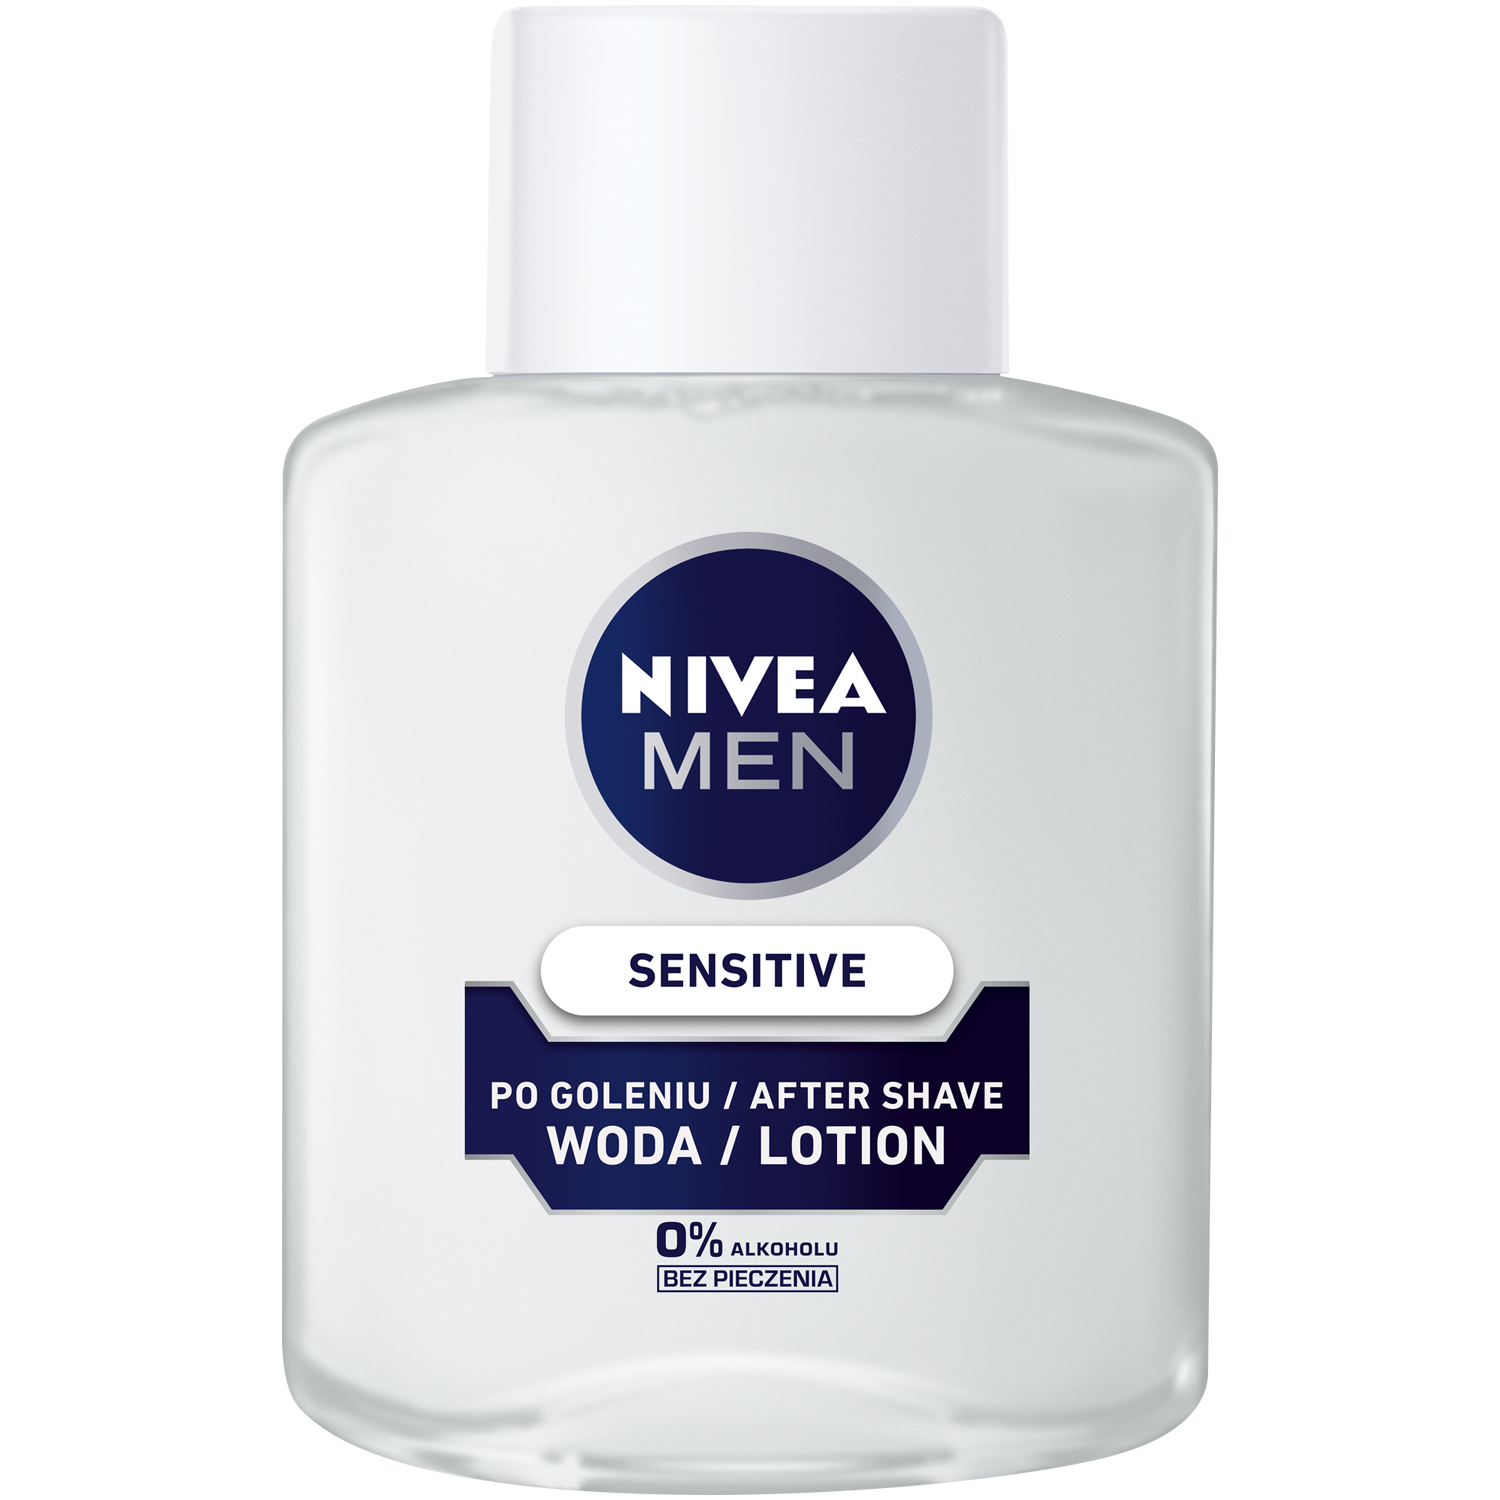 Nivea Men Sensitive успокаивающее средство после бритья, 100 мл